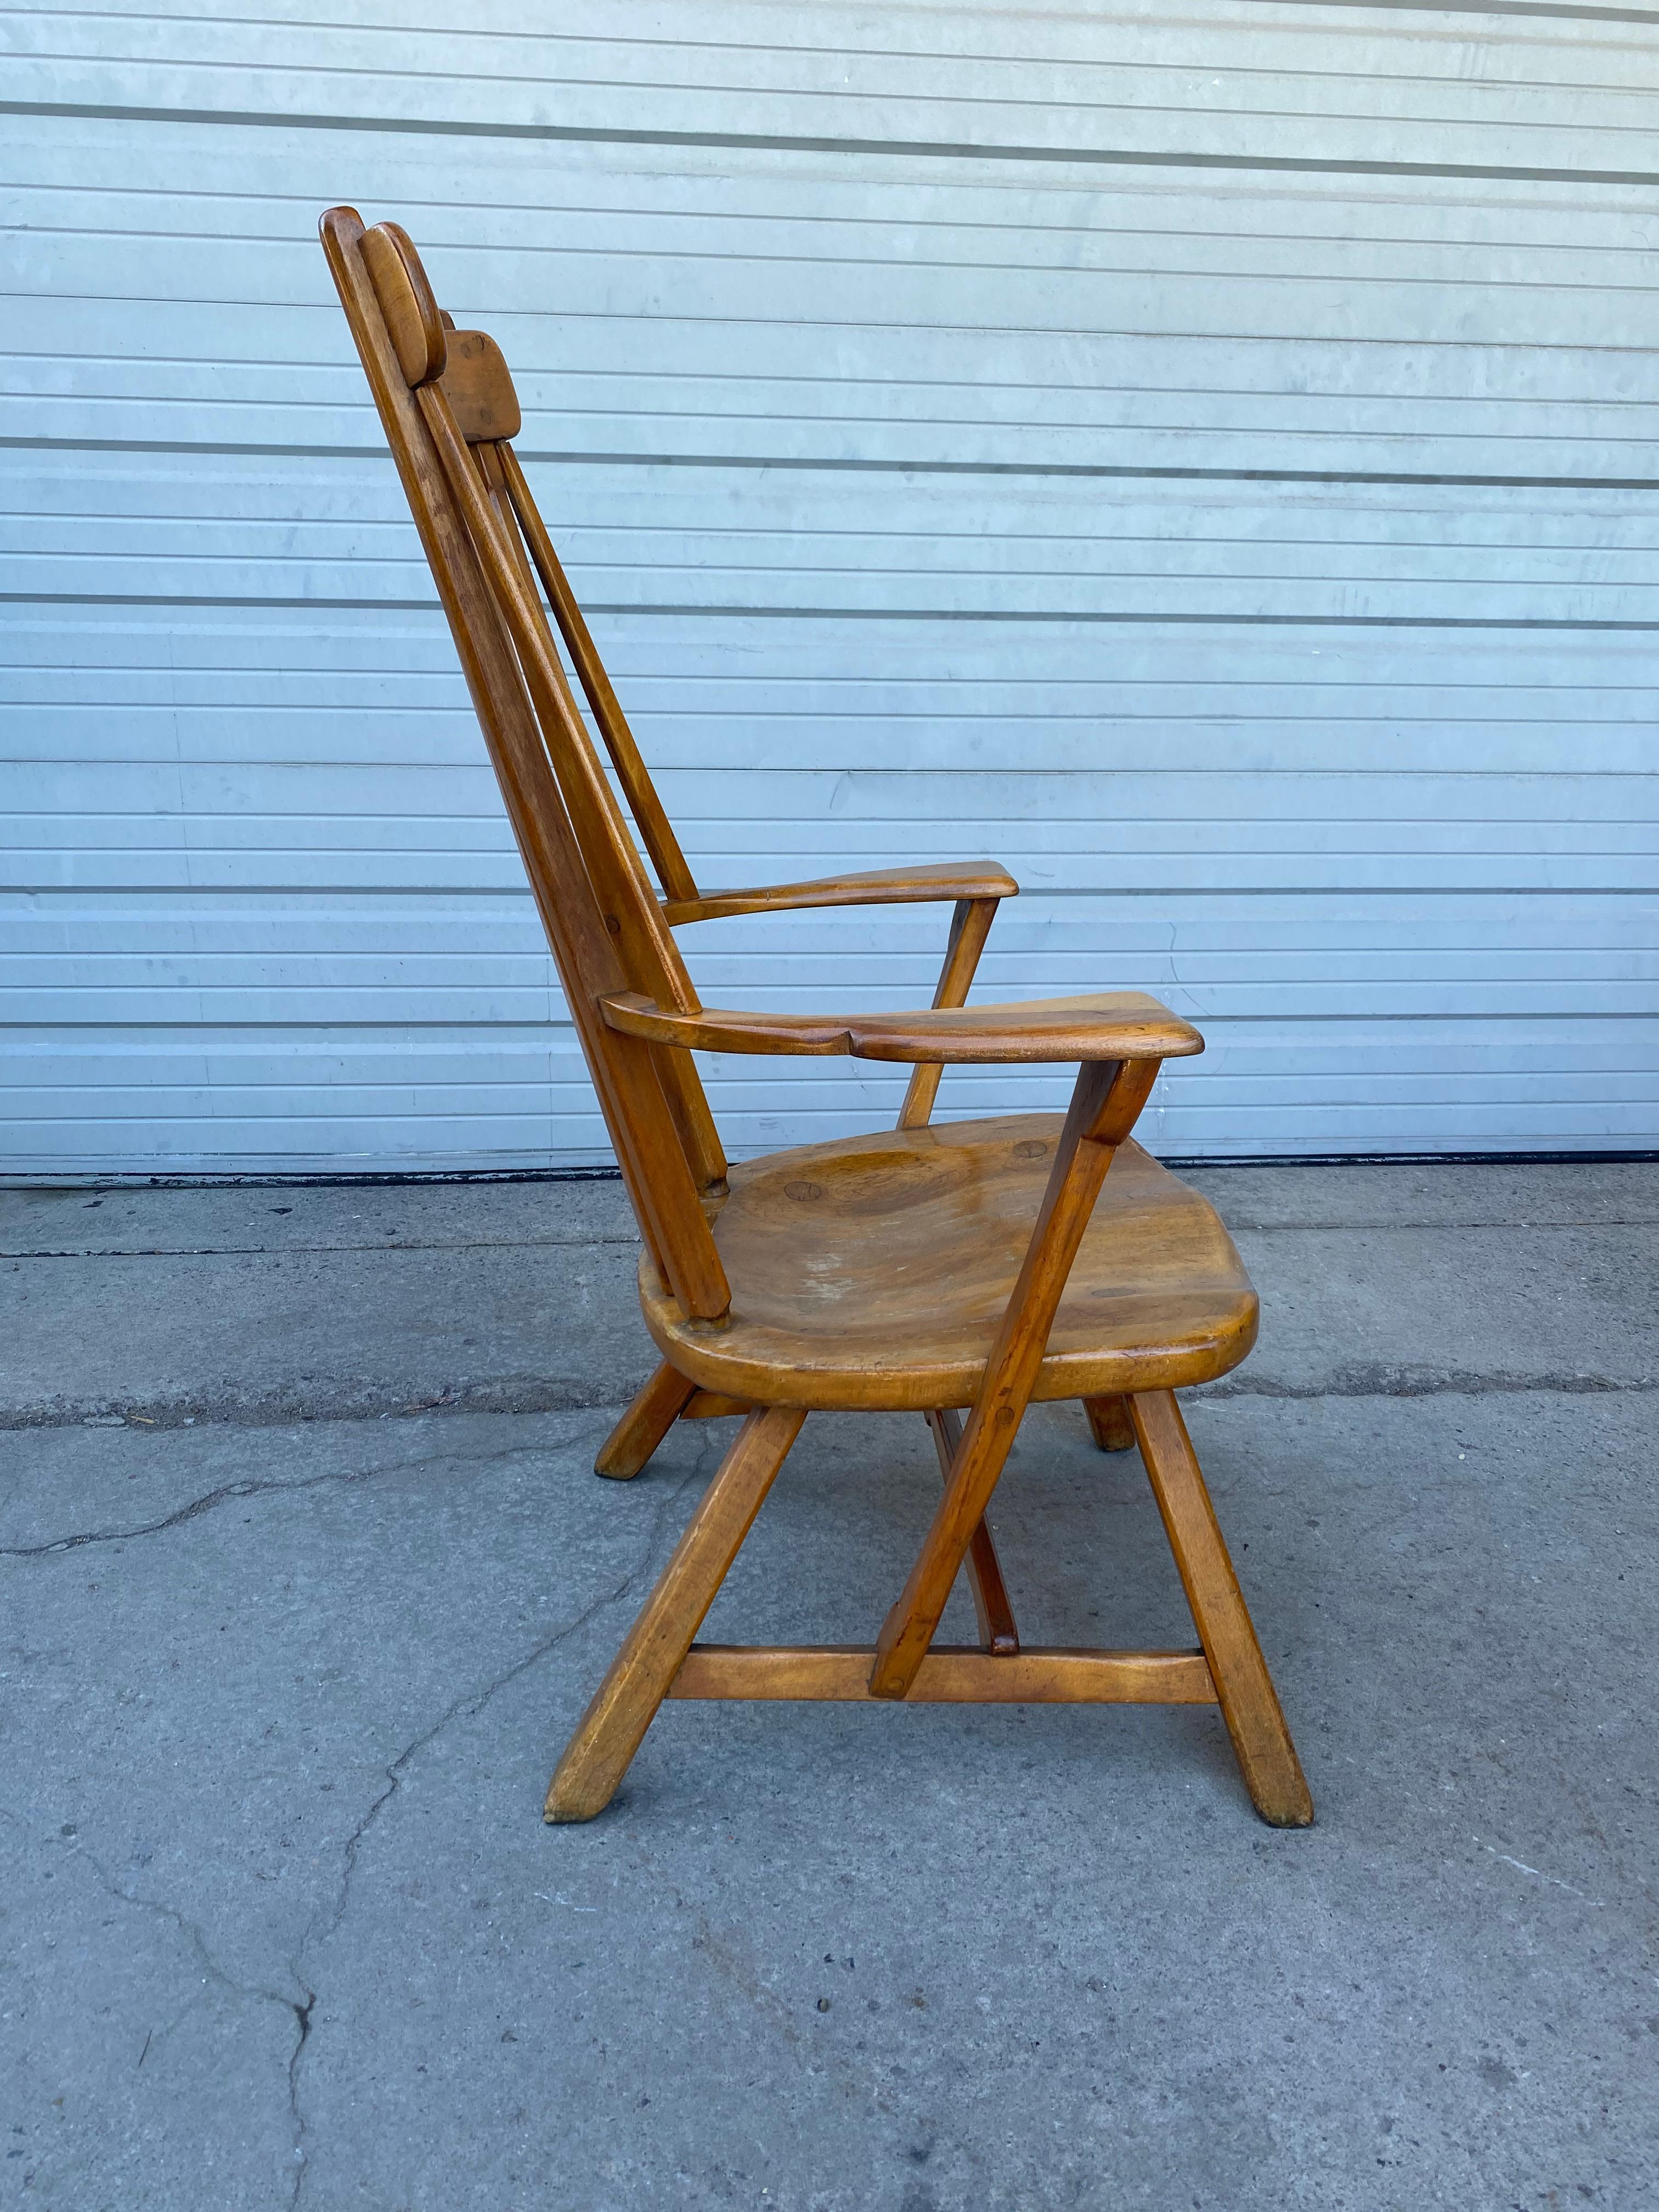 Fauteuil Windsor classique de la société Sikes Chair Company de Buffalo. Elle a été créée par le designer Herman de Vries. Conserve sa patine d'origine. Finition, extrêmement confortable... qualité et construction supérieures. Usure appropriée à